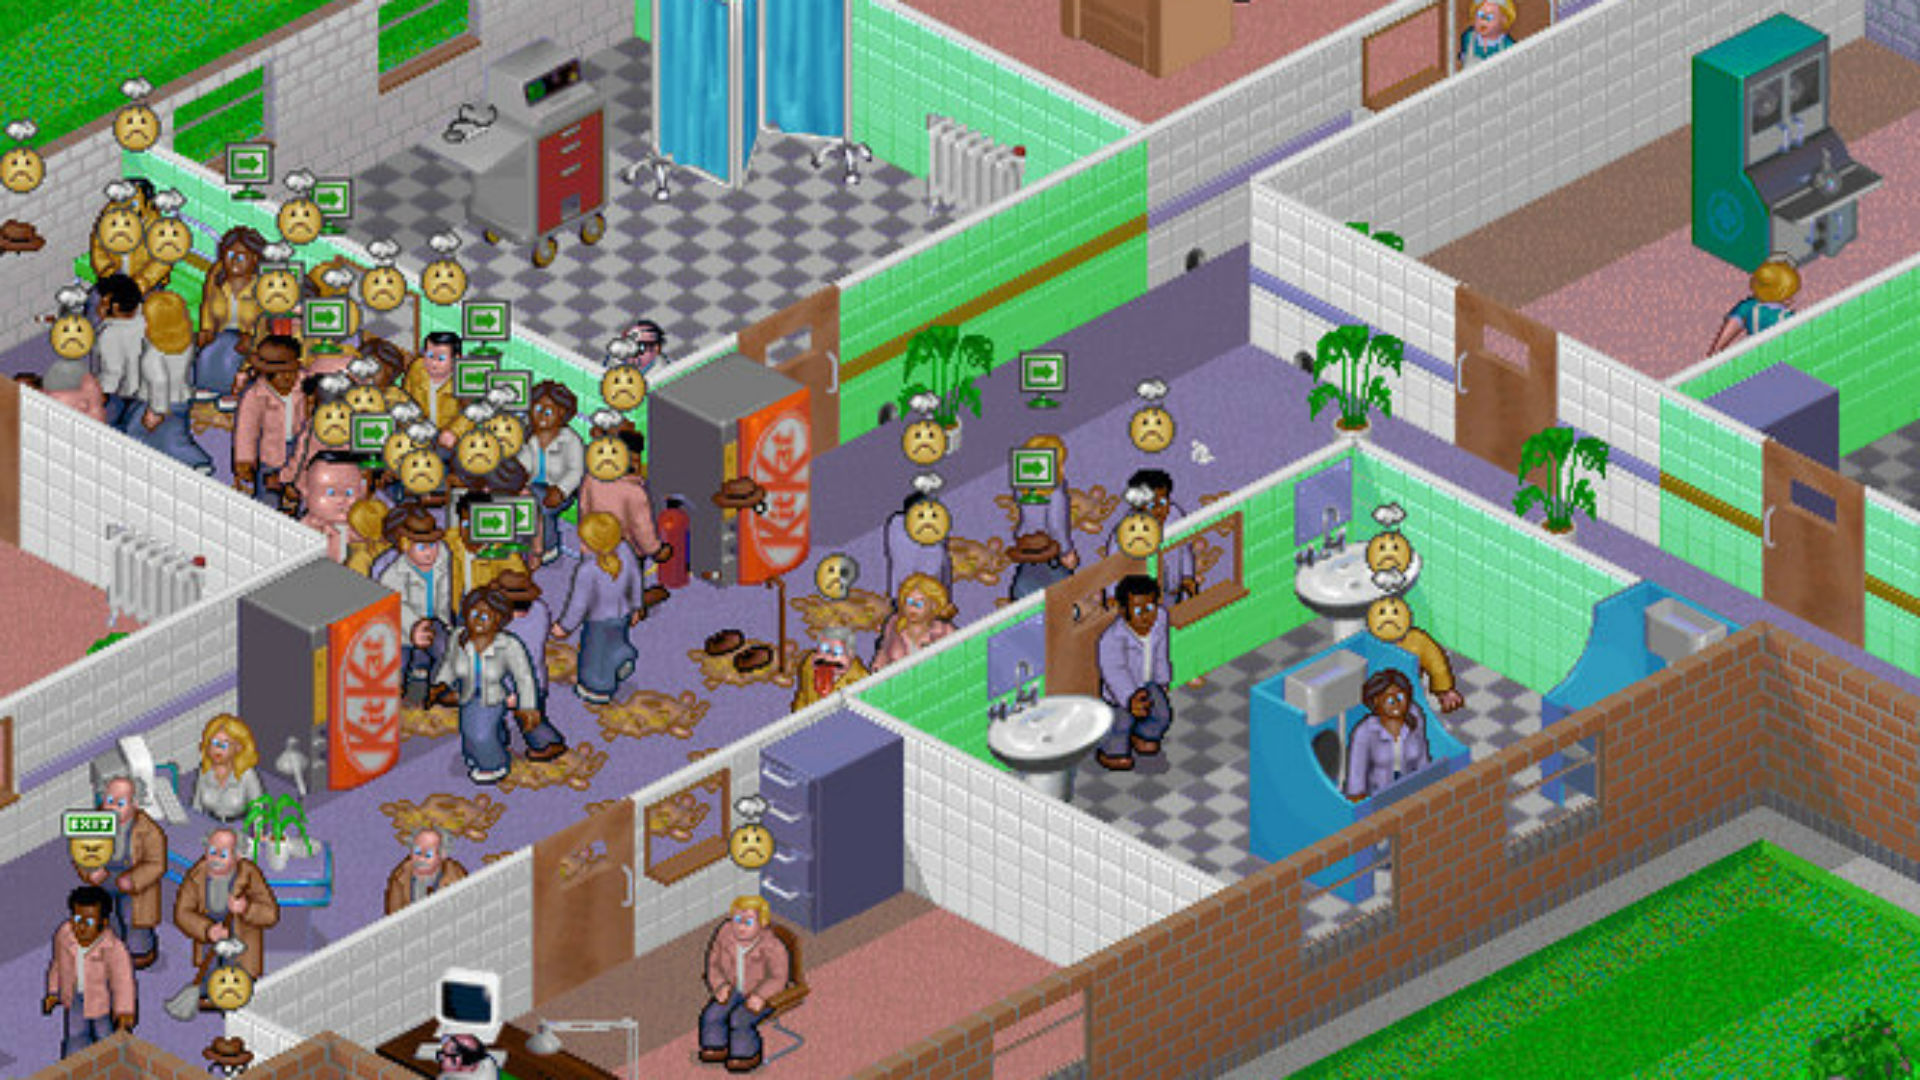 Flere patienter samles i en korridor på Theme Hospital, et af de bedste gamle spil